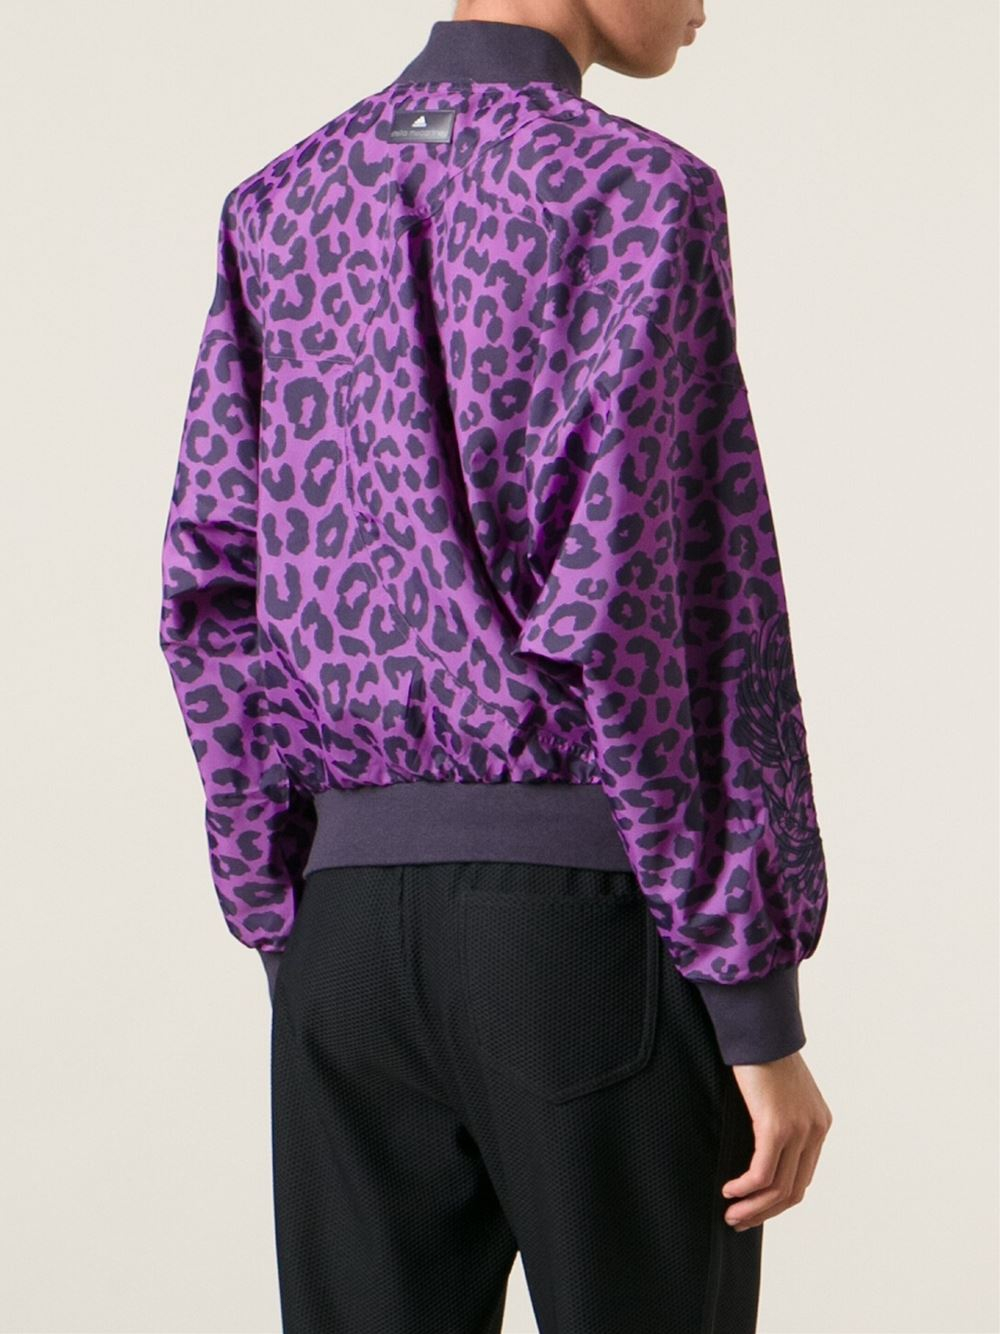 adidas By Stella McCartney Leopard Print Sport Jacket in Pink & Purple  (Purple) | Lyst